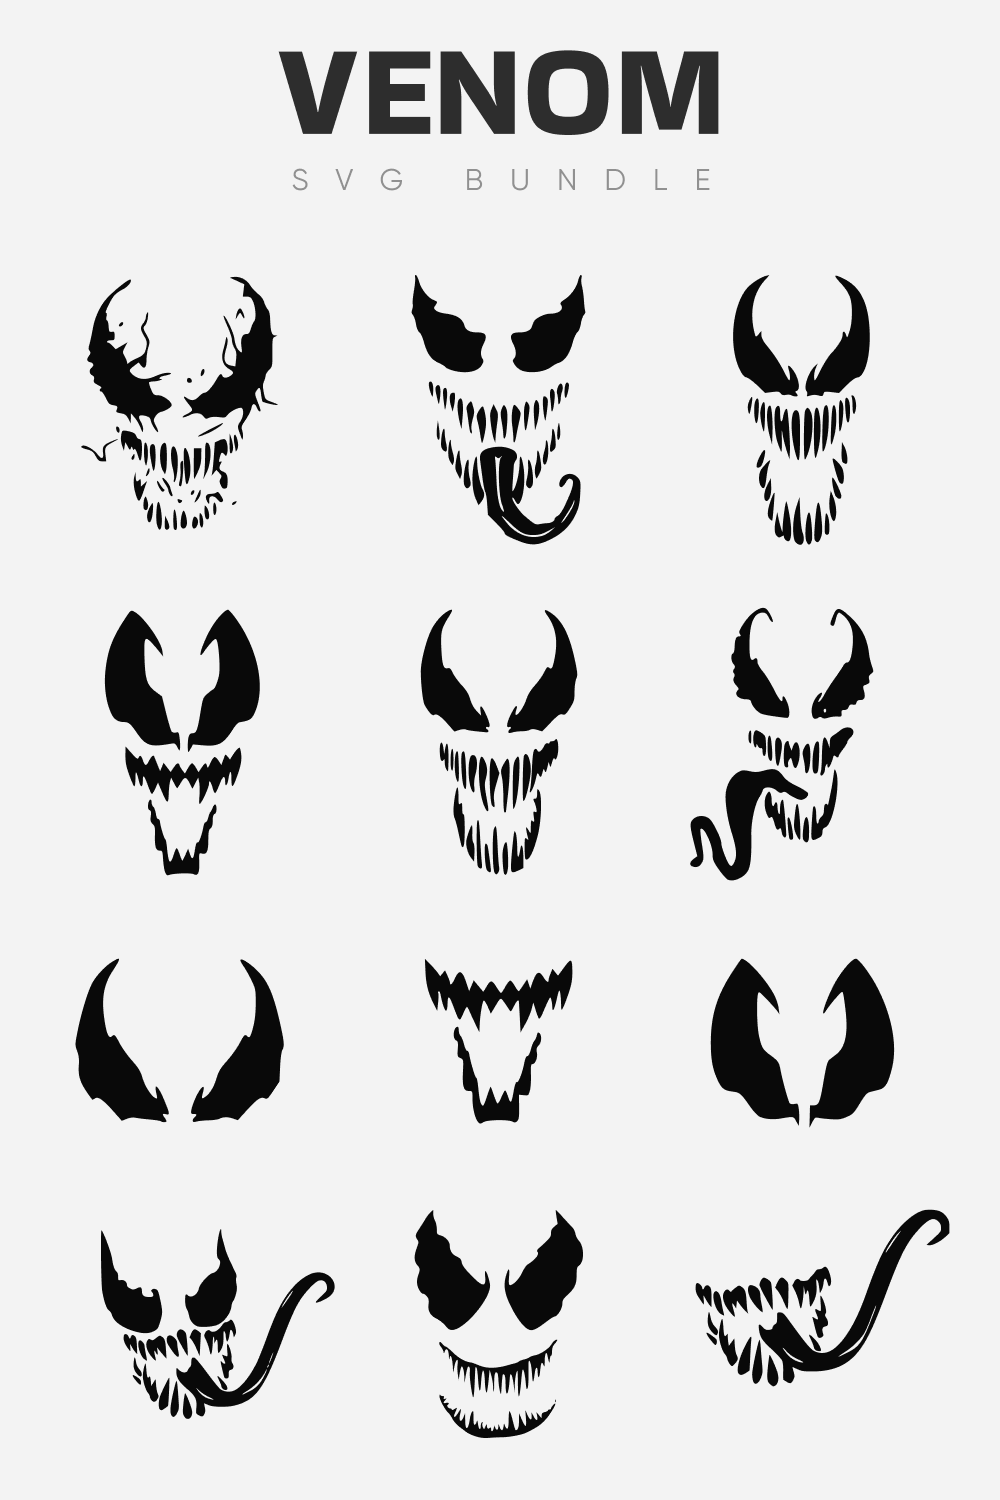 Venom SVG Bundle, Vertical 12 Masks.